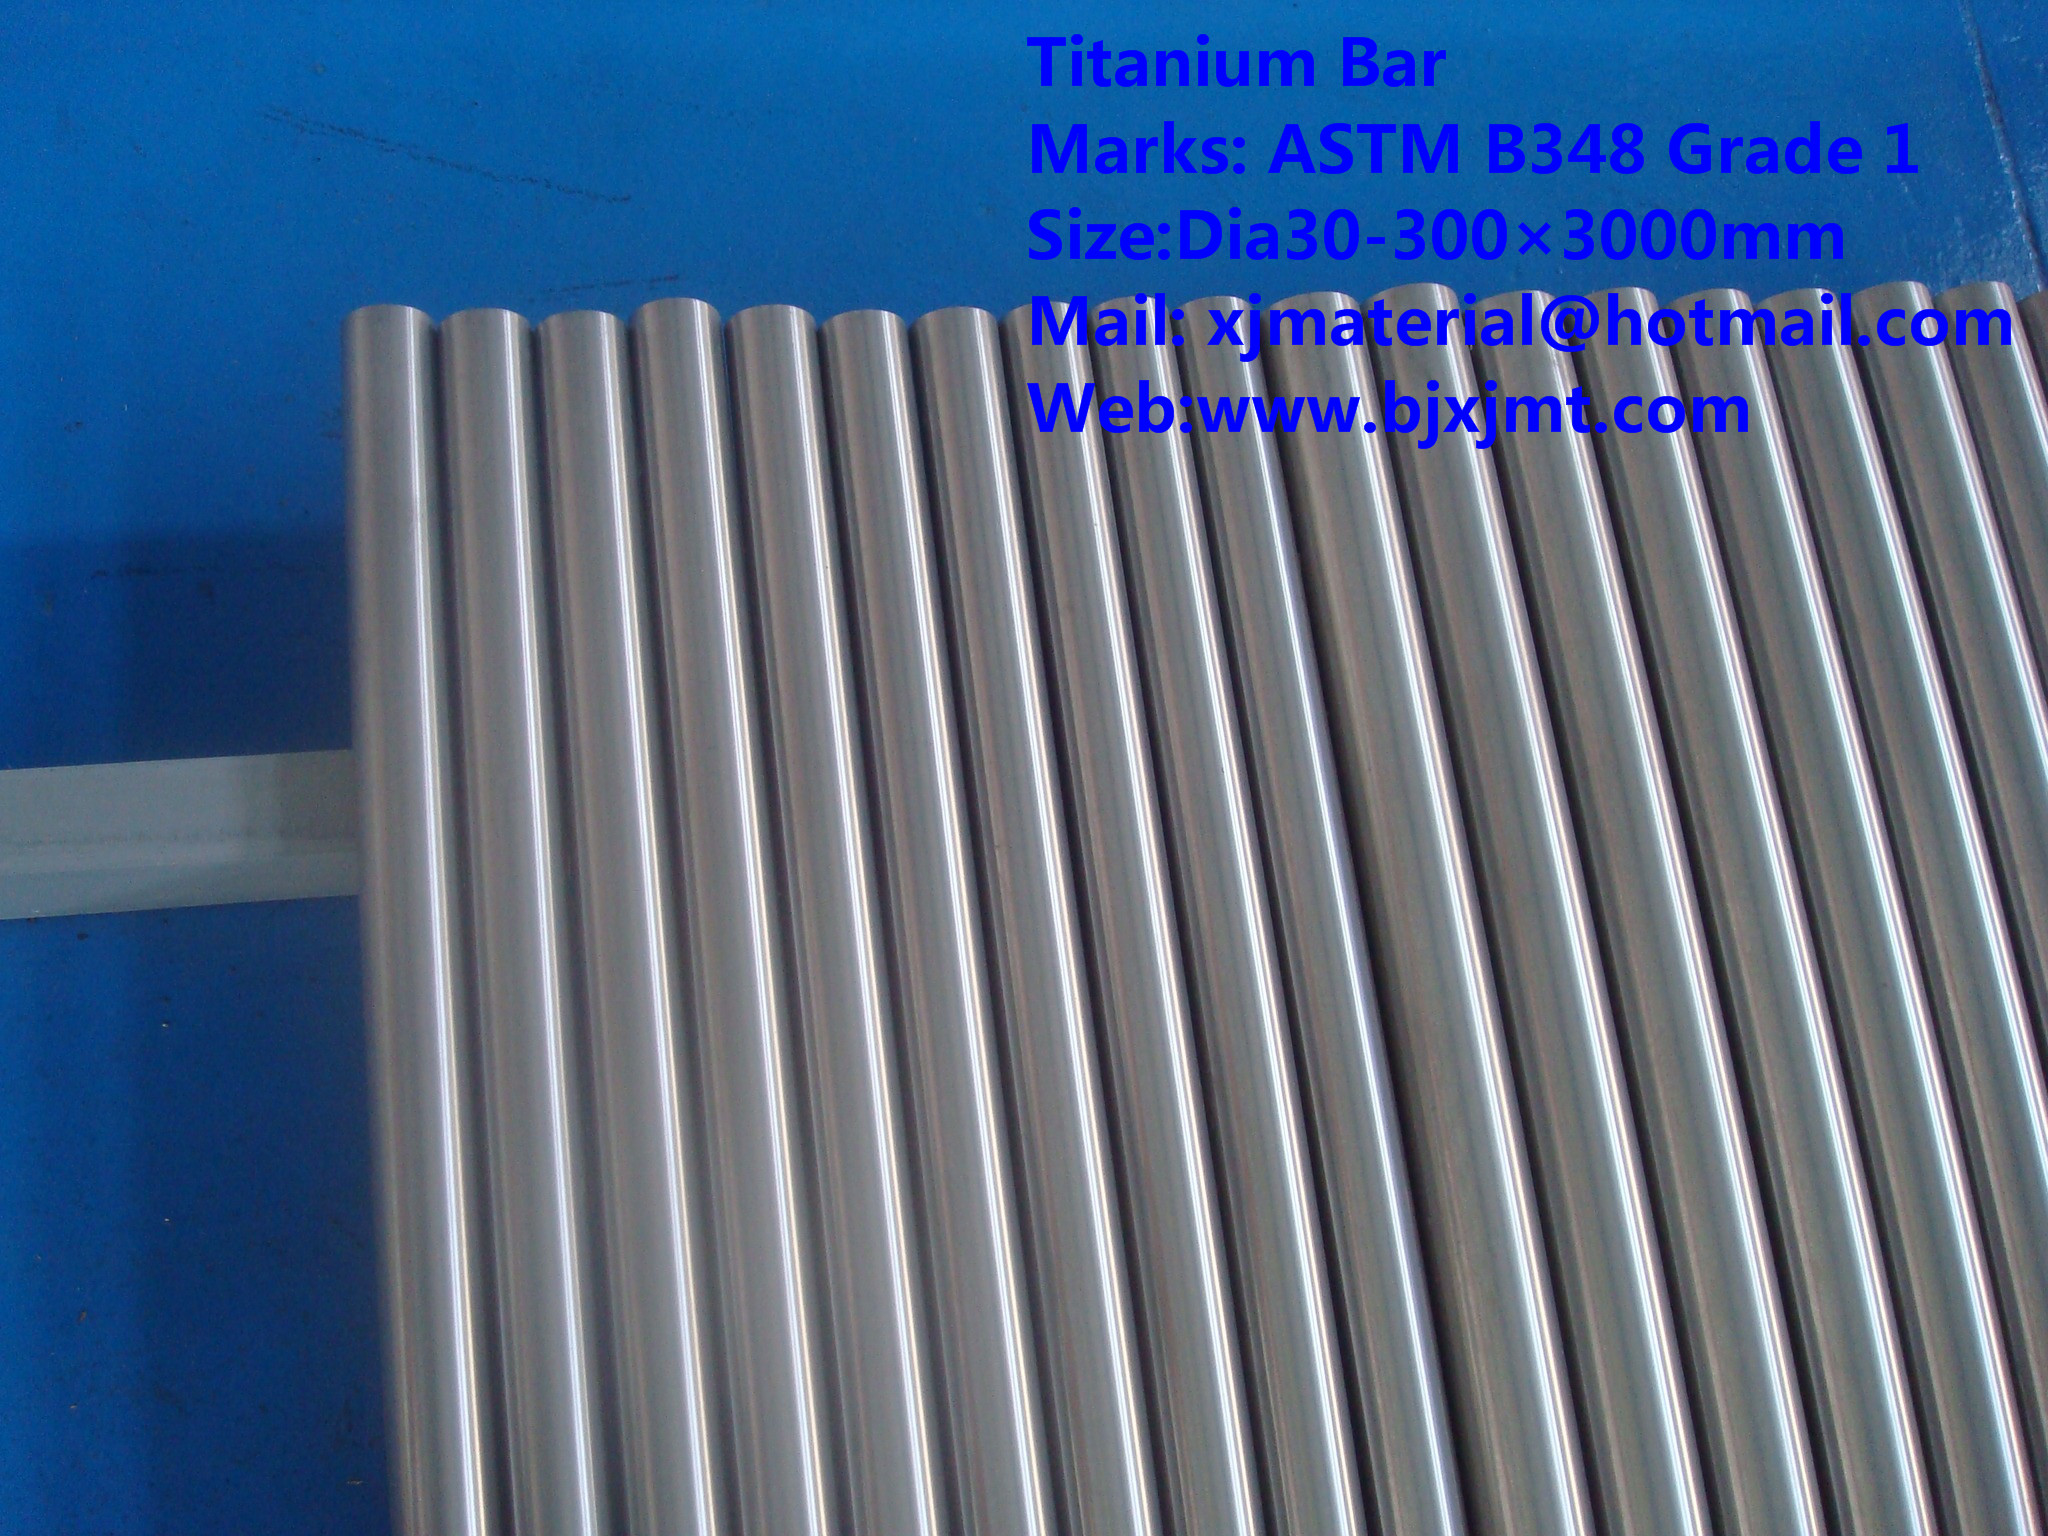 Titanium Bar